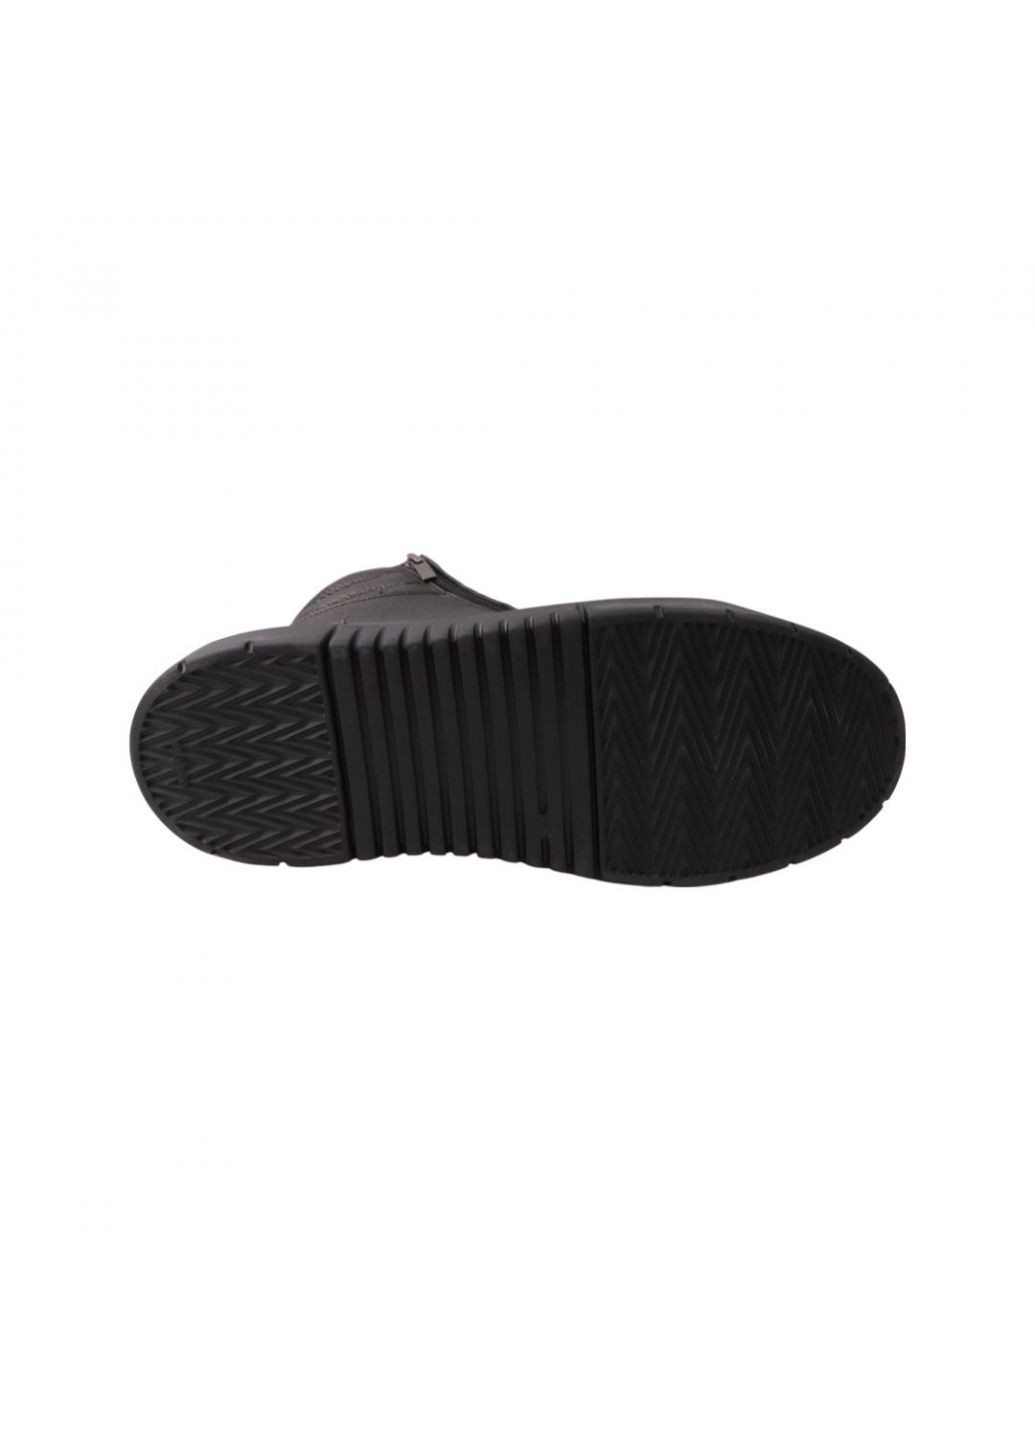 Черные ботинки мужские черные натуральная кожа Flamanti